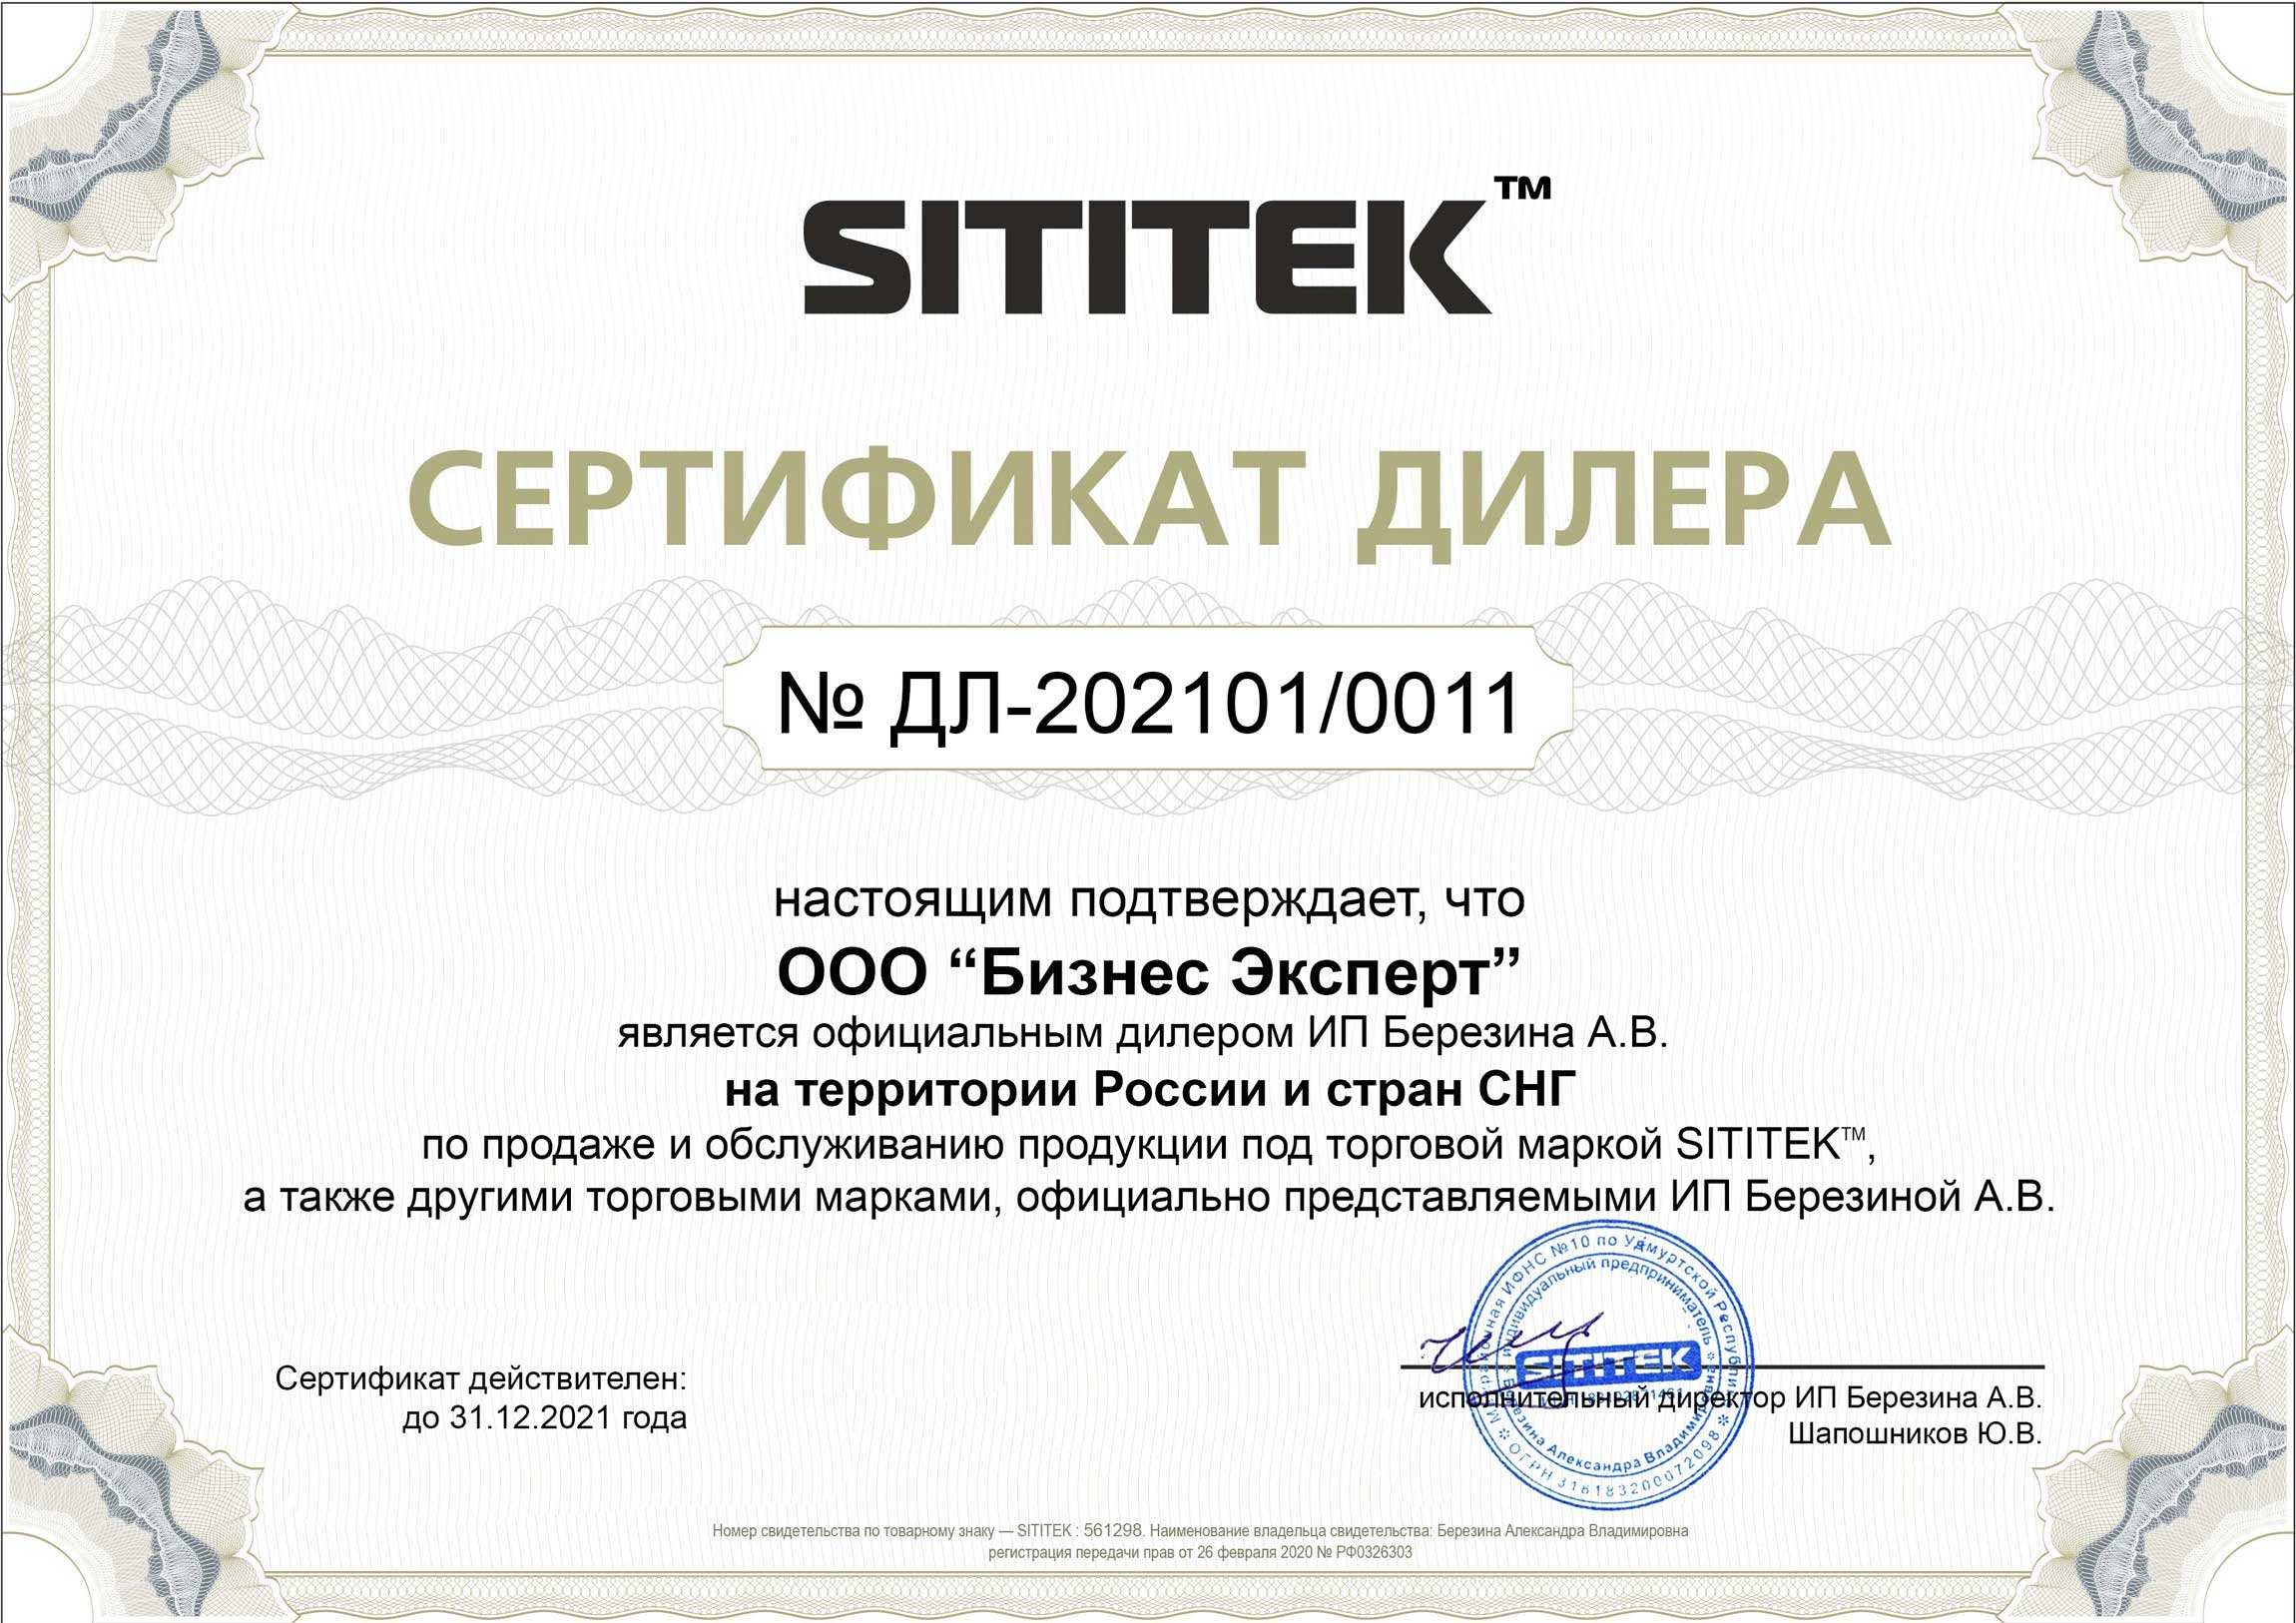 Сертификат дилера на право реализации и обслуживания продукции ТМ SITITEK